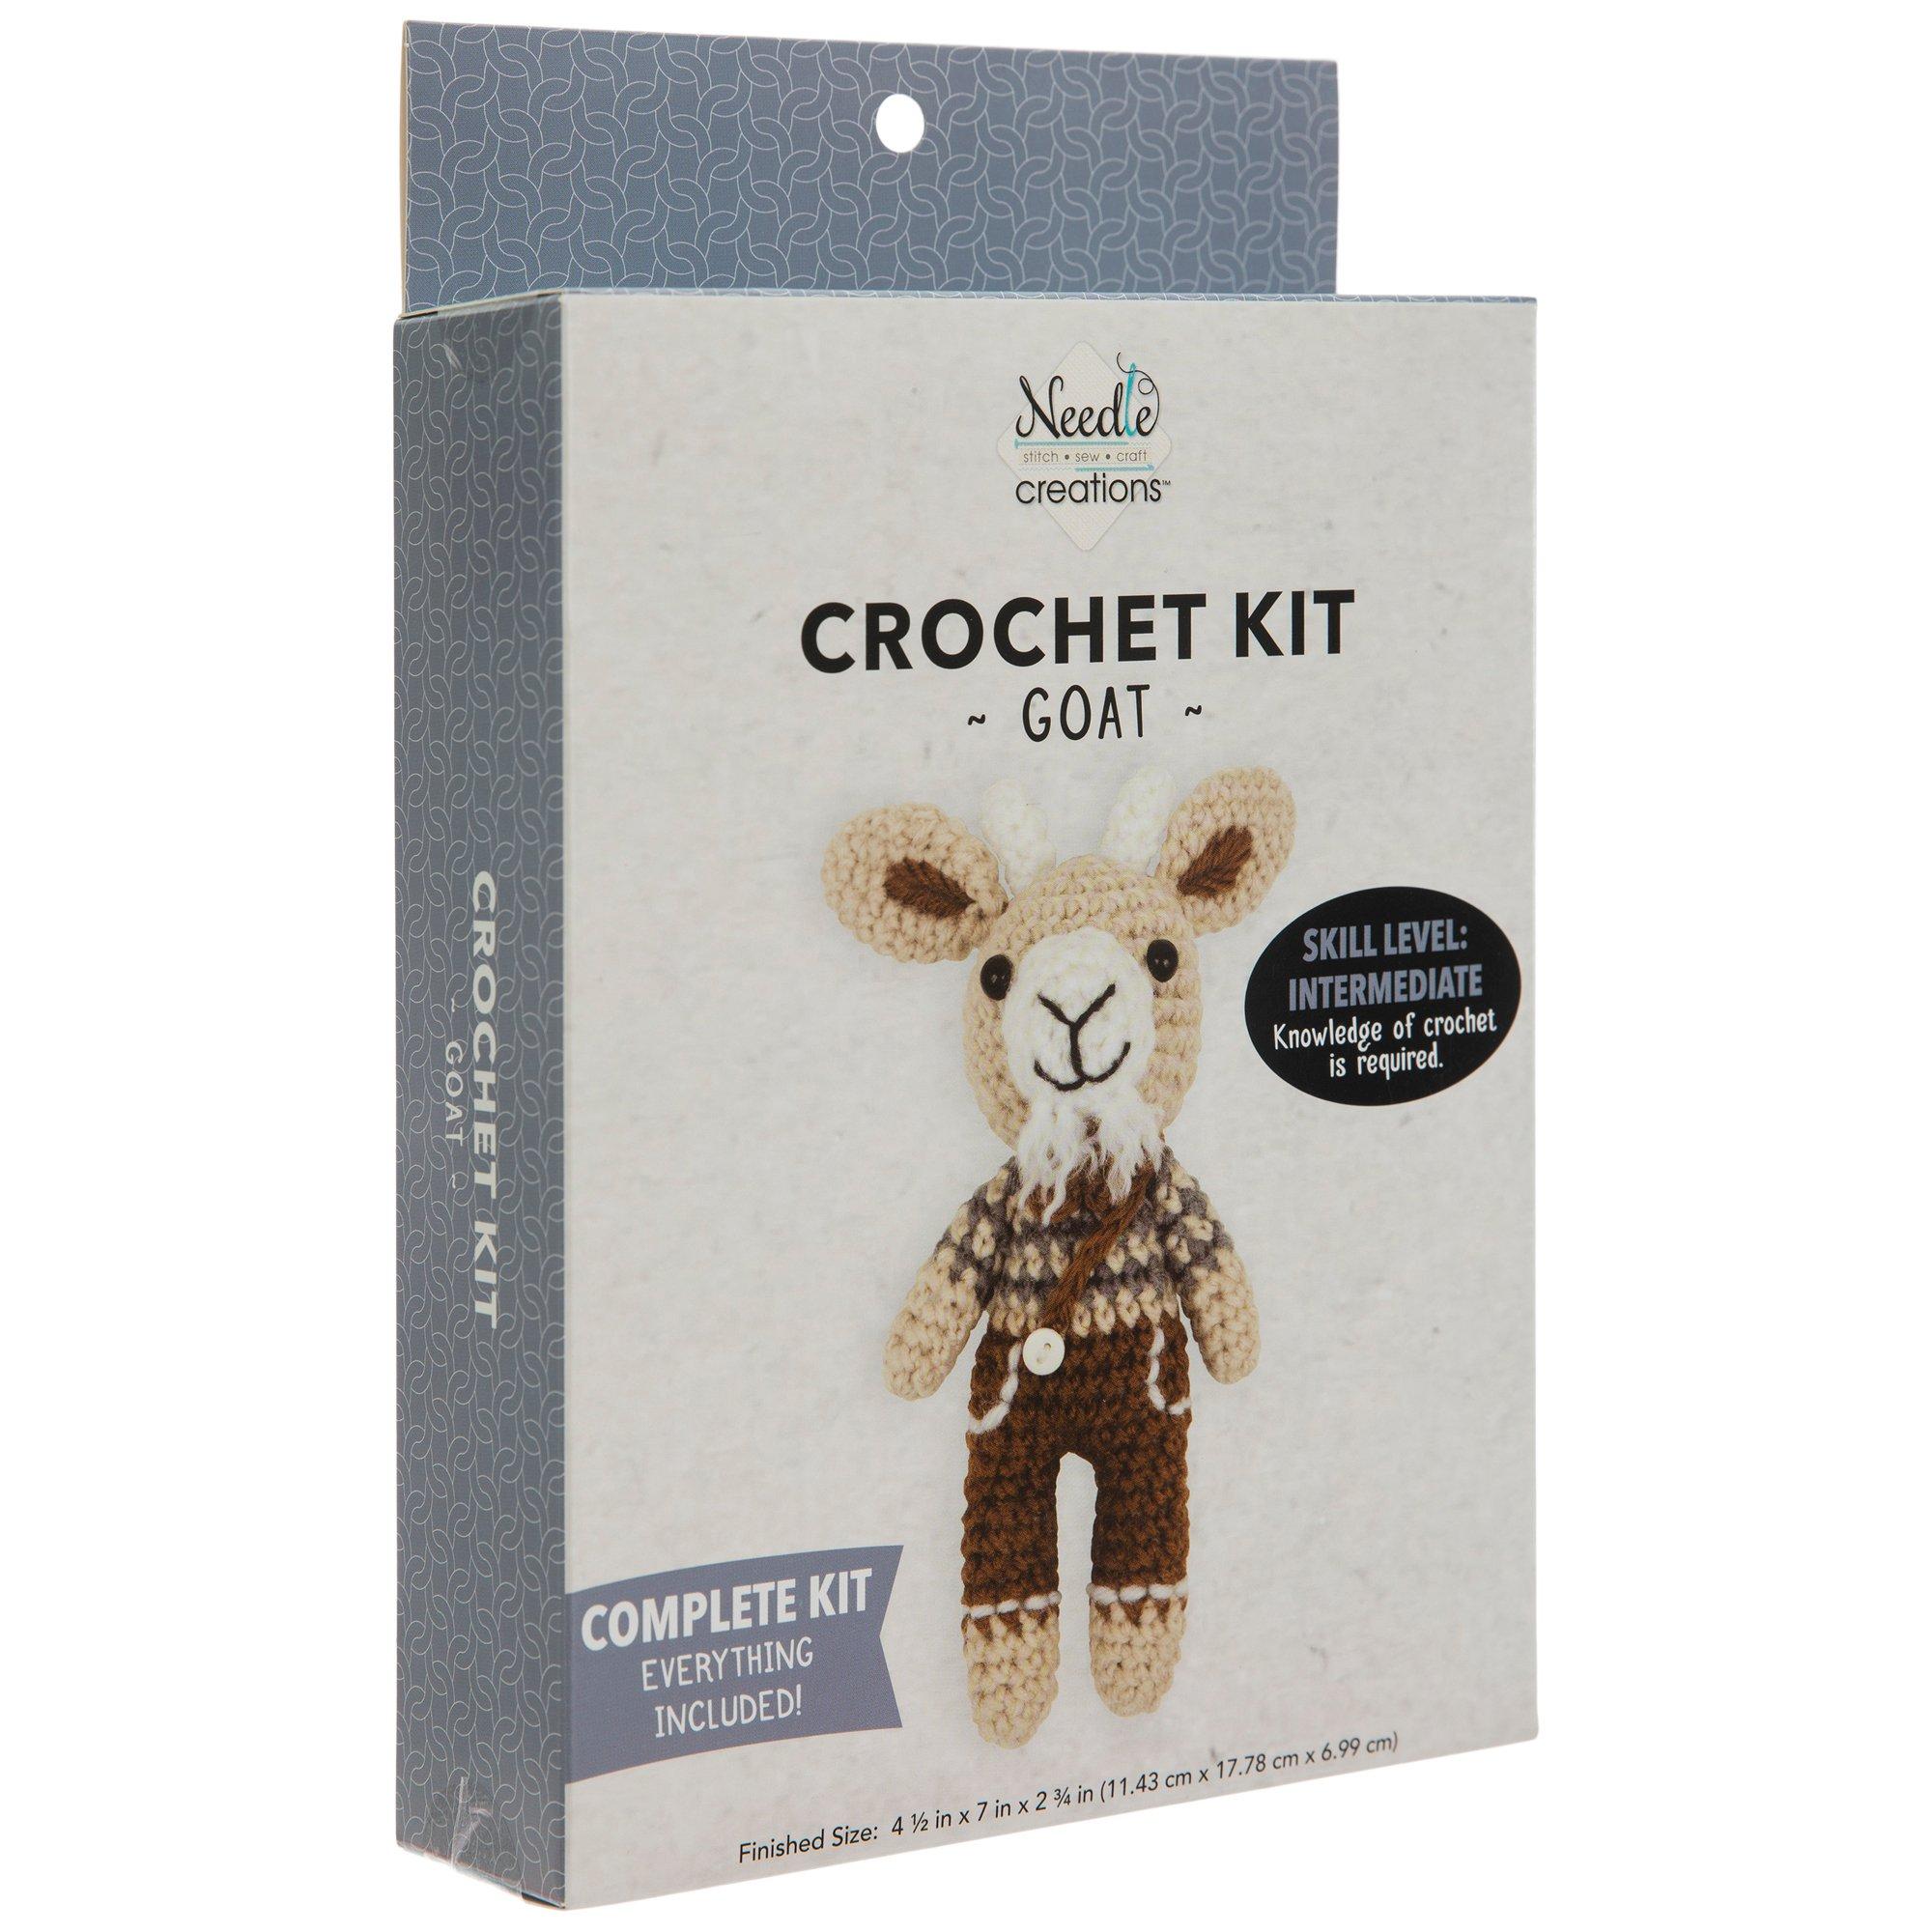 Goat Crochet Kit